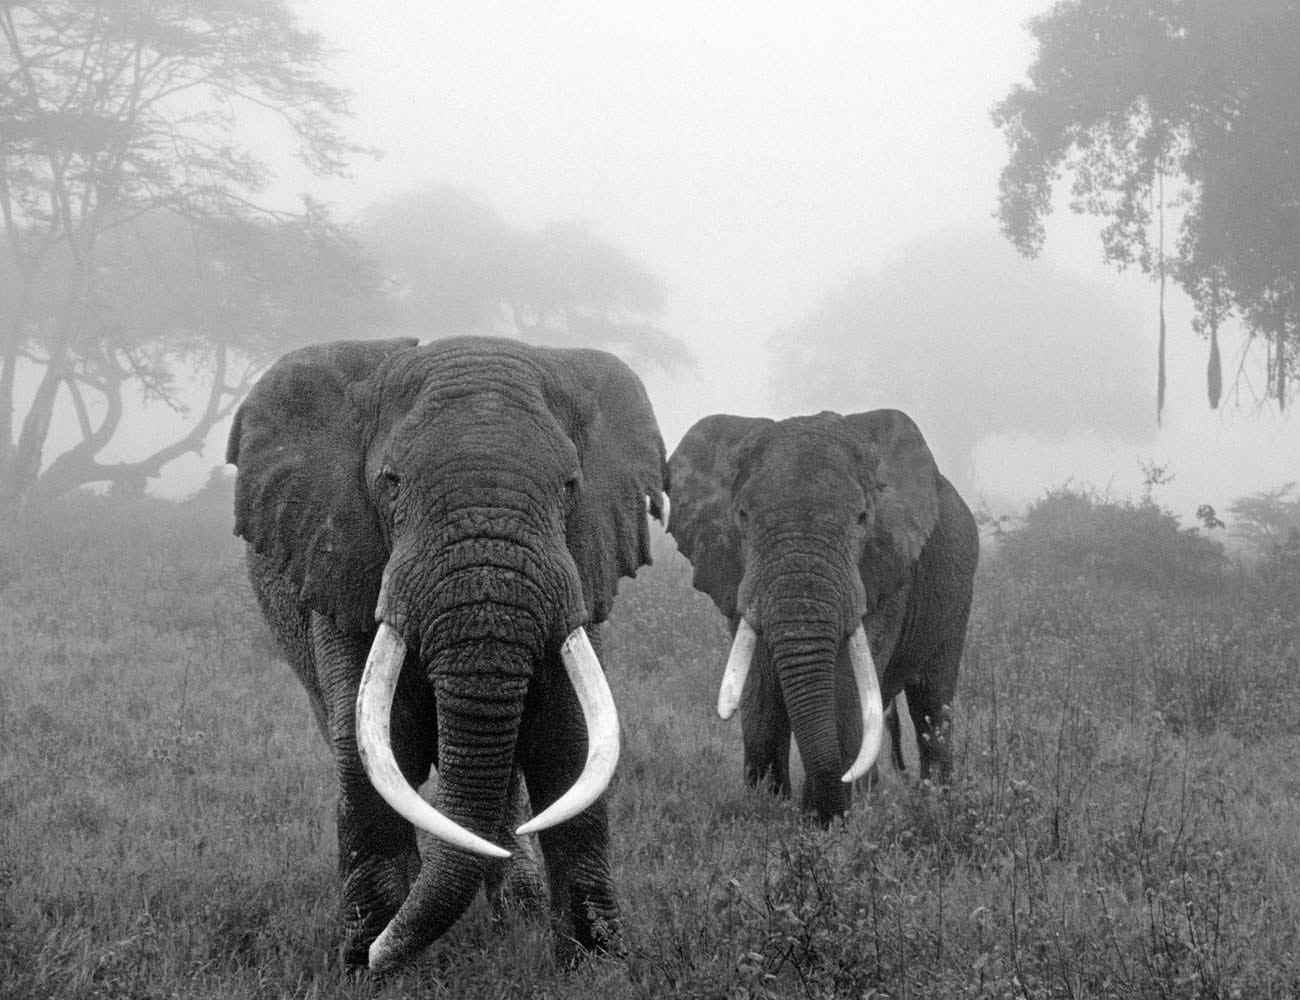 Animals at Ngorongoro Conservation Area